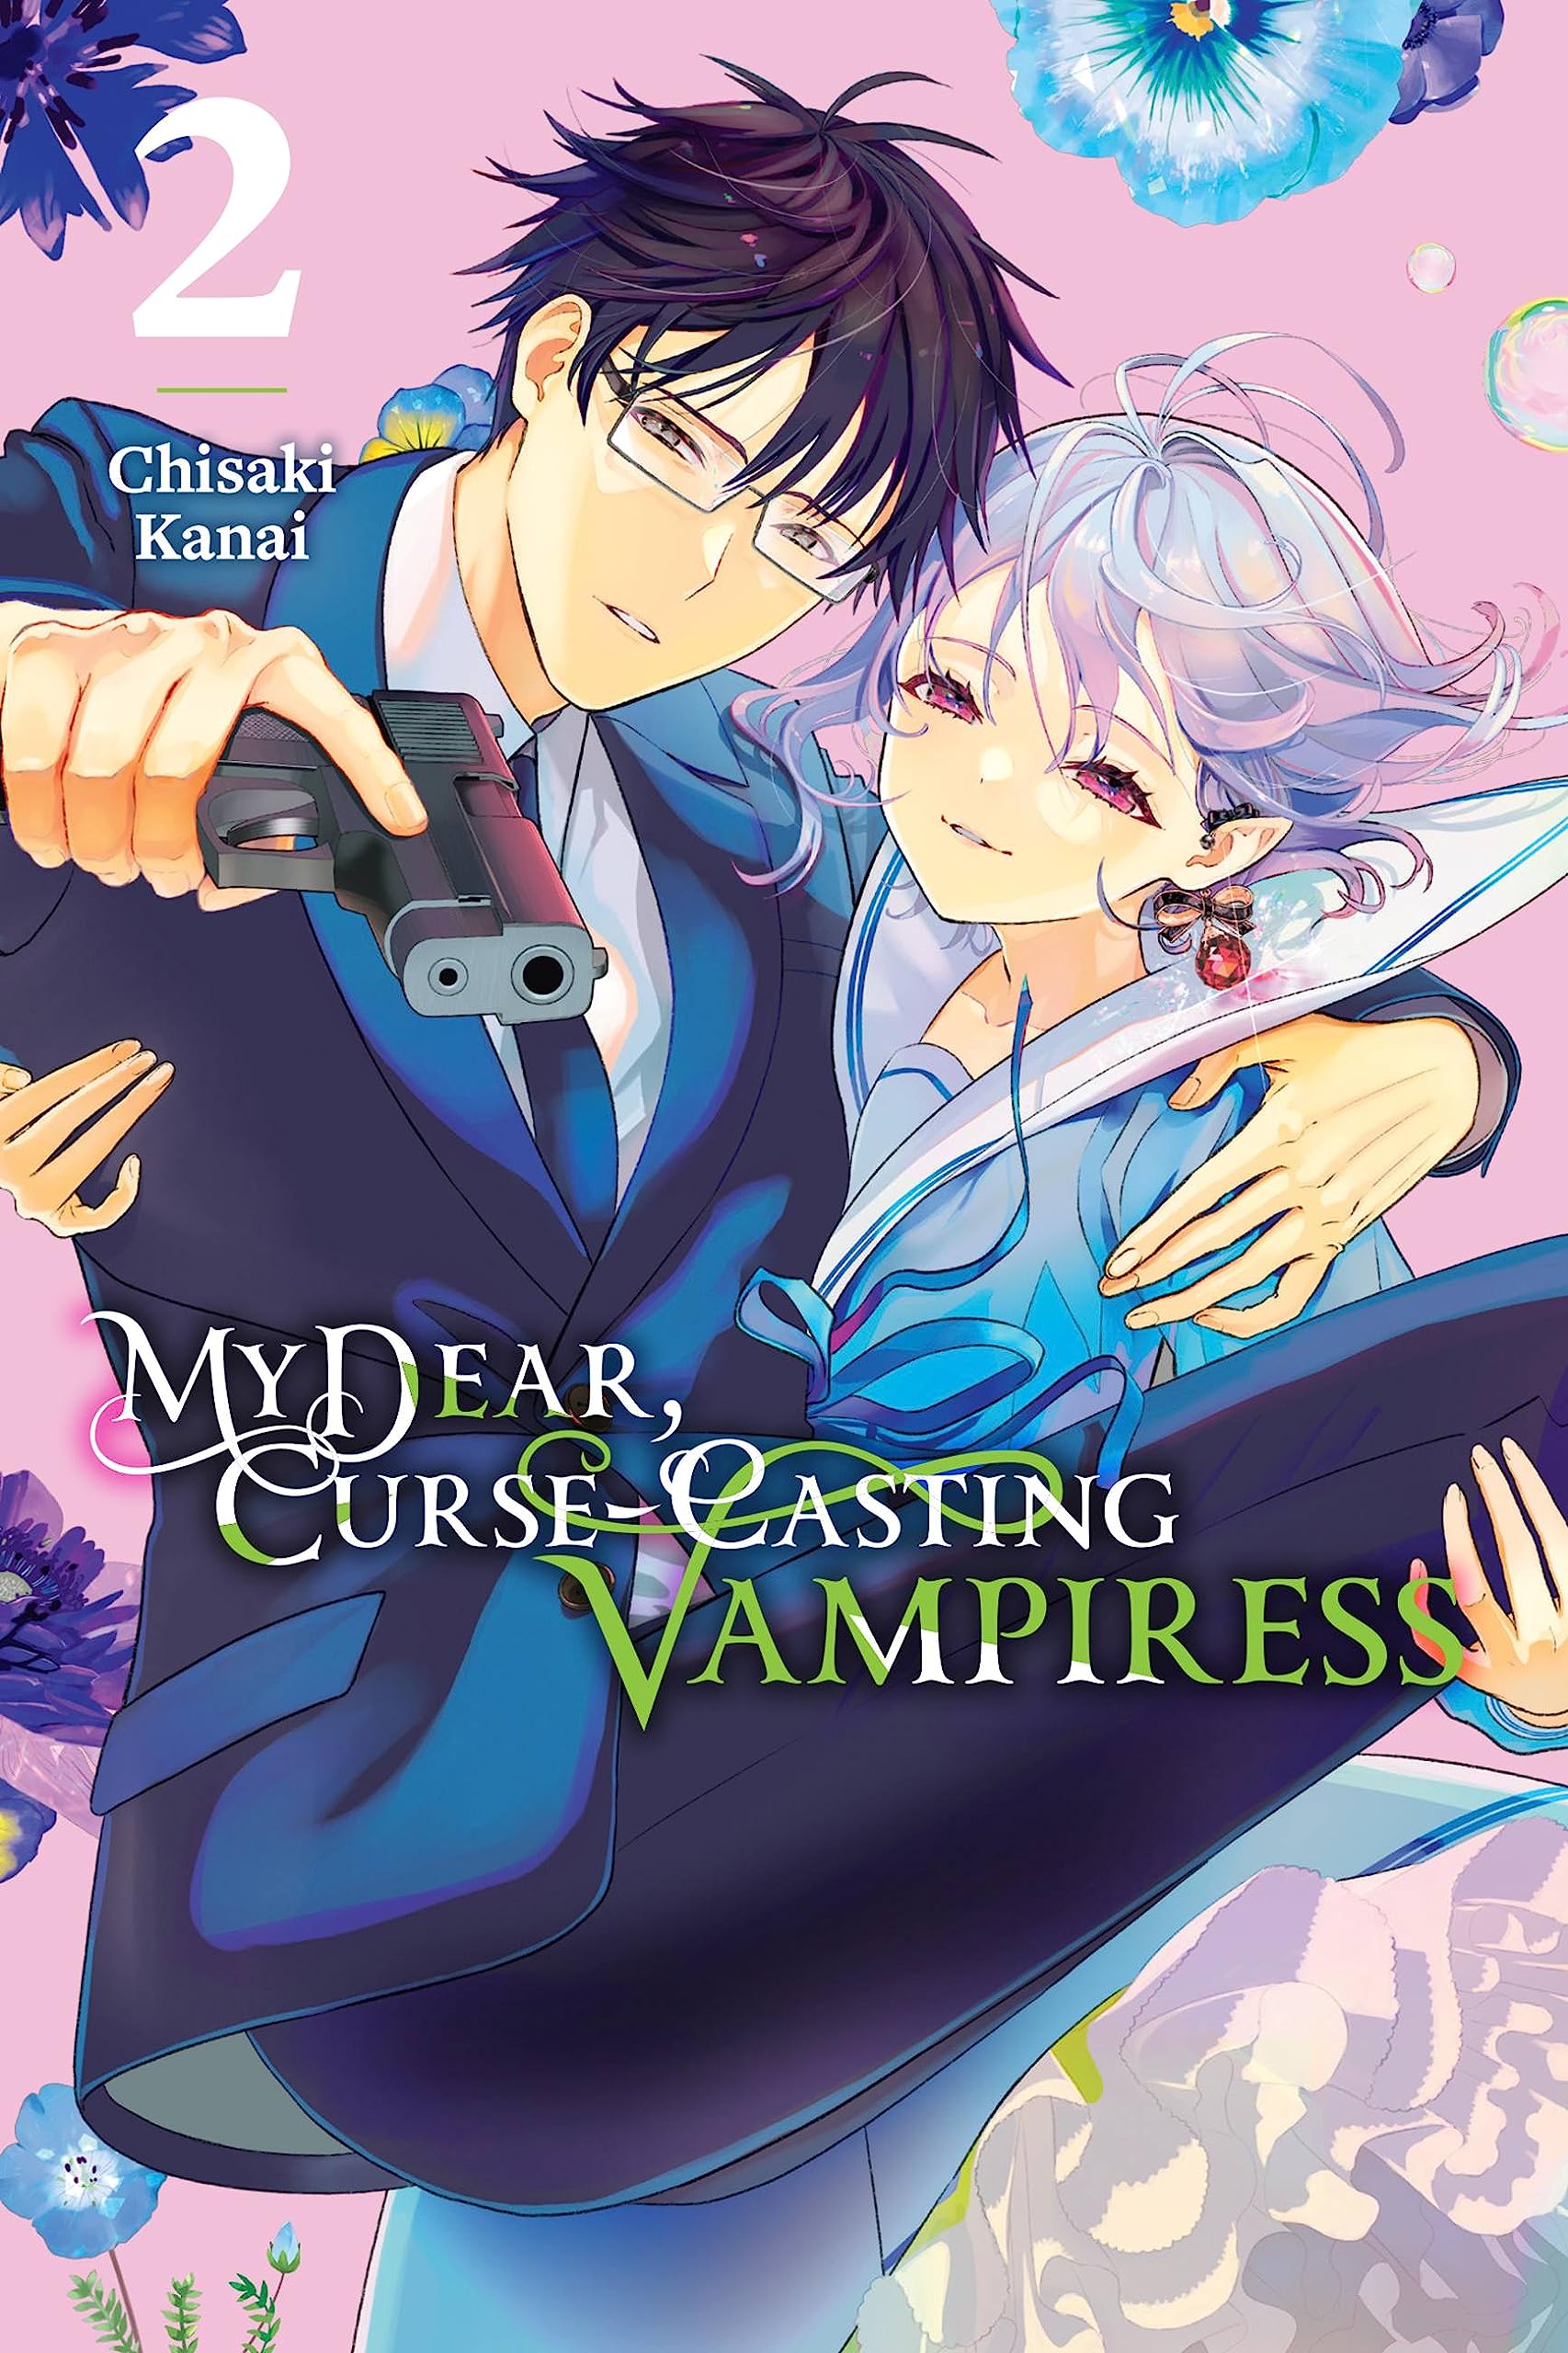 My Dear, Curse-Casting Vampiress Vol. 02